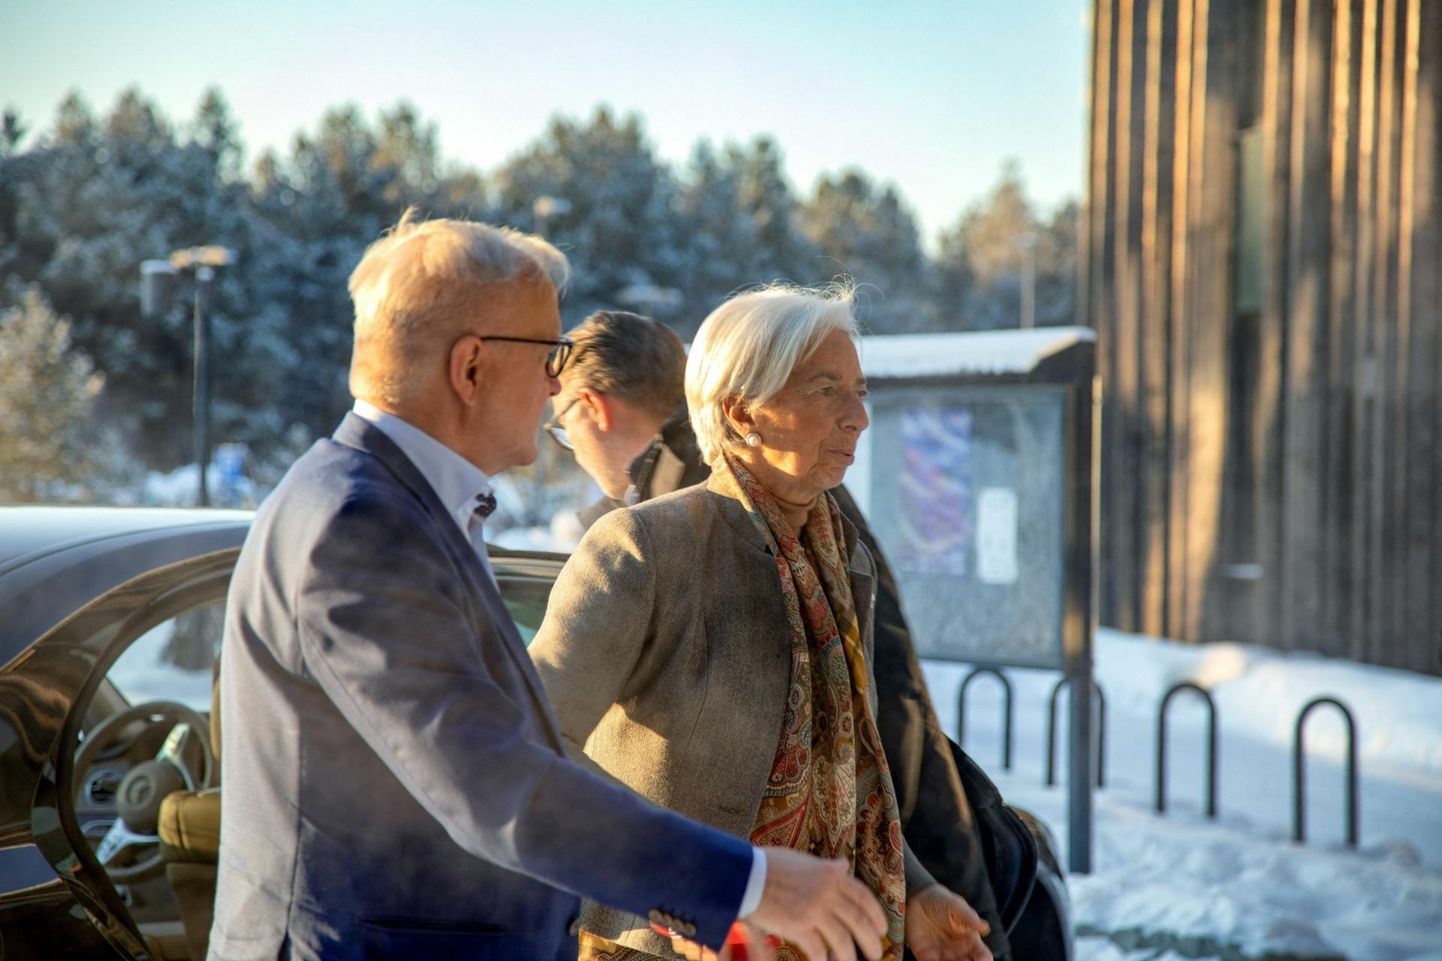 Euroopa Keskpanga president Christine Lagarde (paremal) ja Soome Panga president Olli Rehn saabumas möödunud kuul Lapimaal Inaris peetud EKP nõukogu mitterahapoliitika kohtumisele.